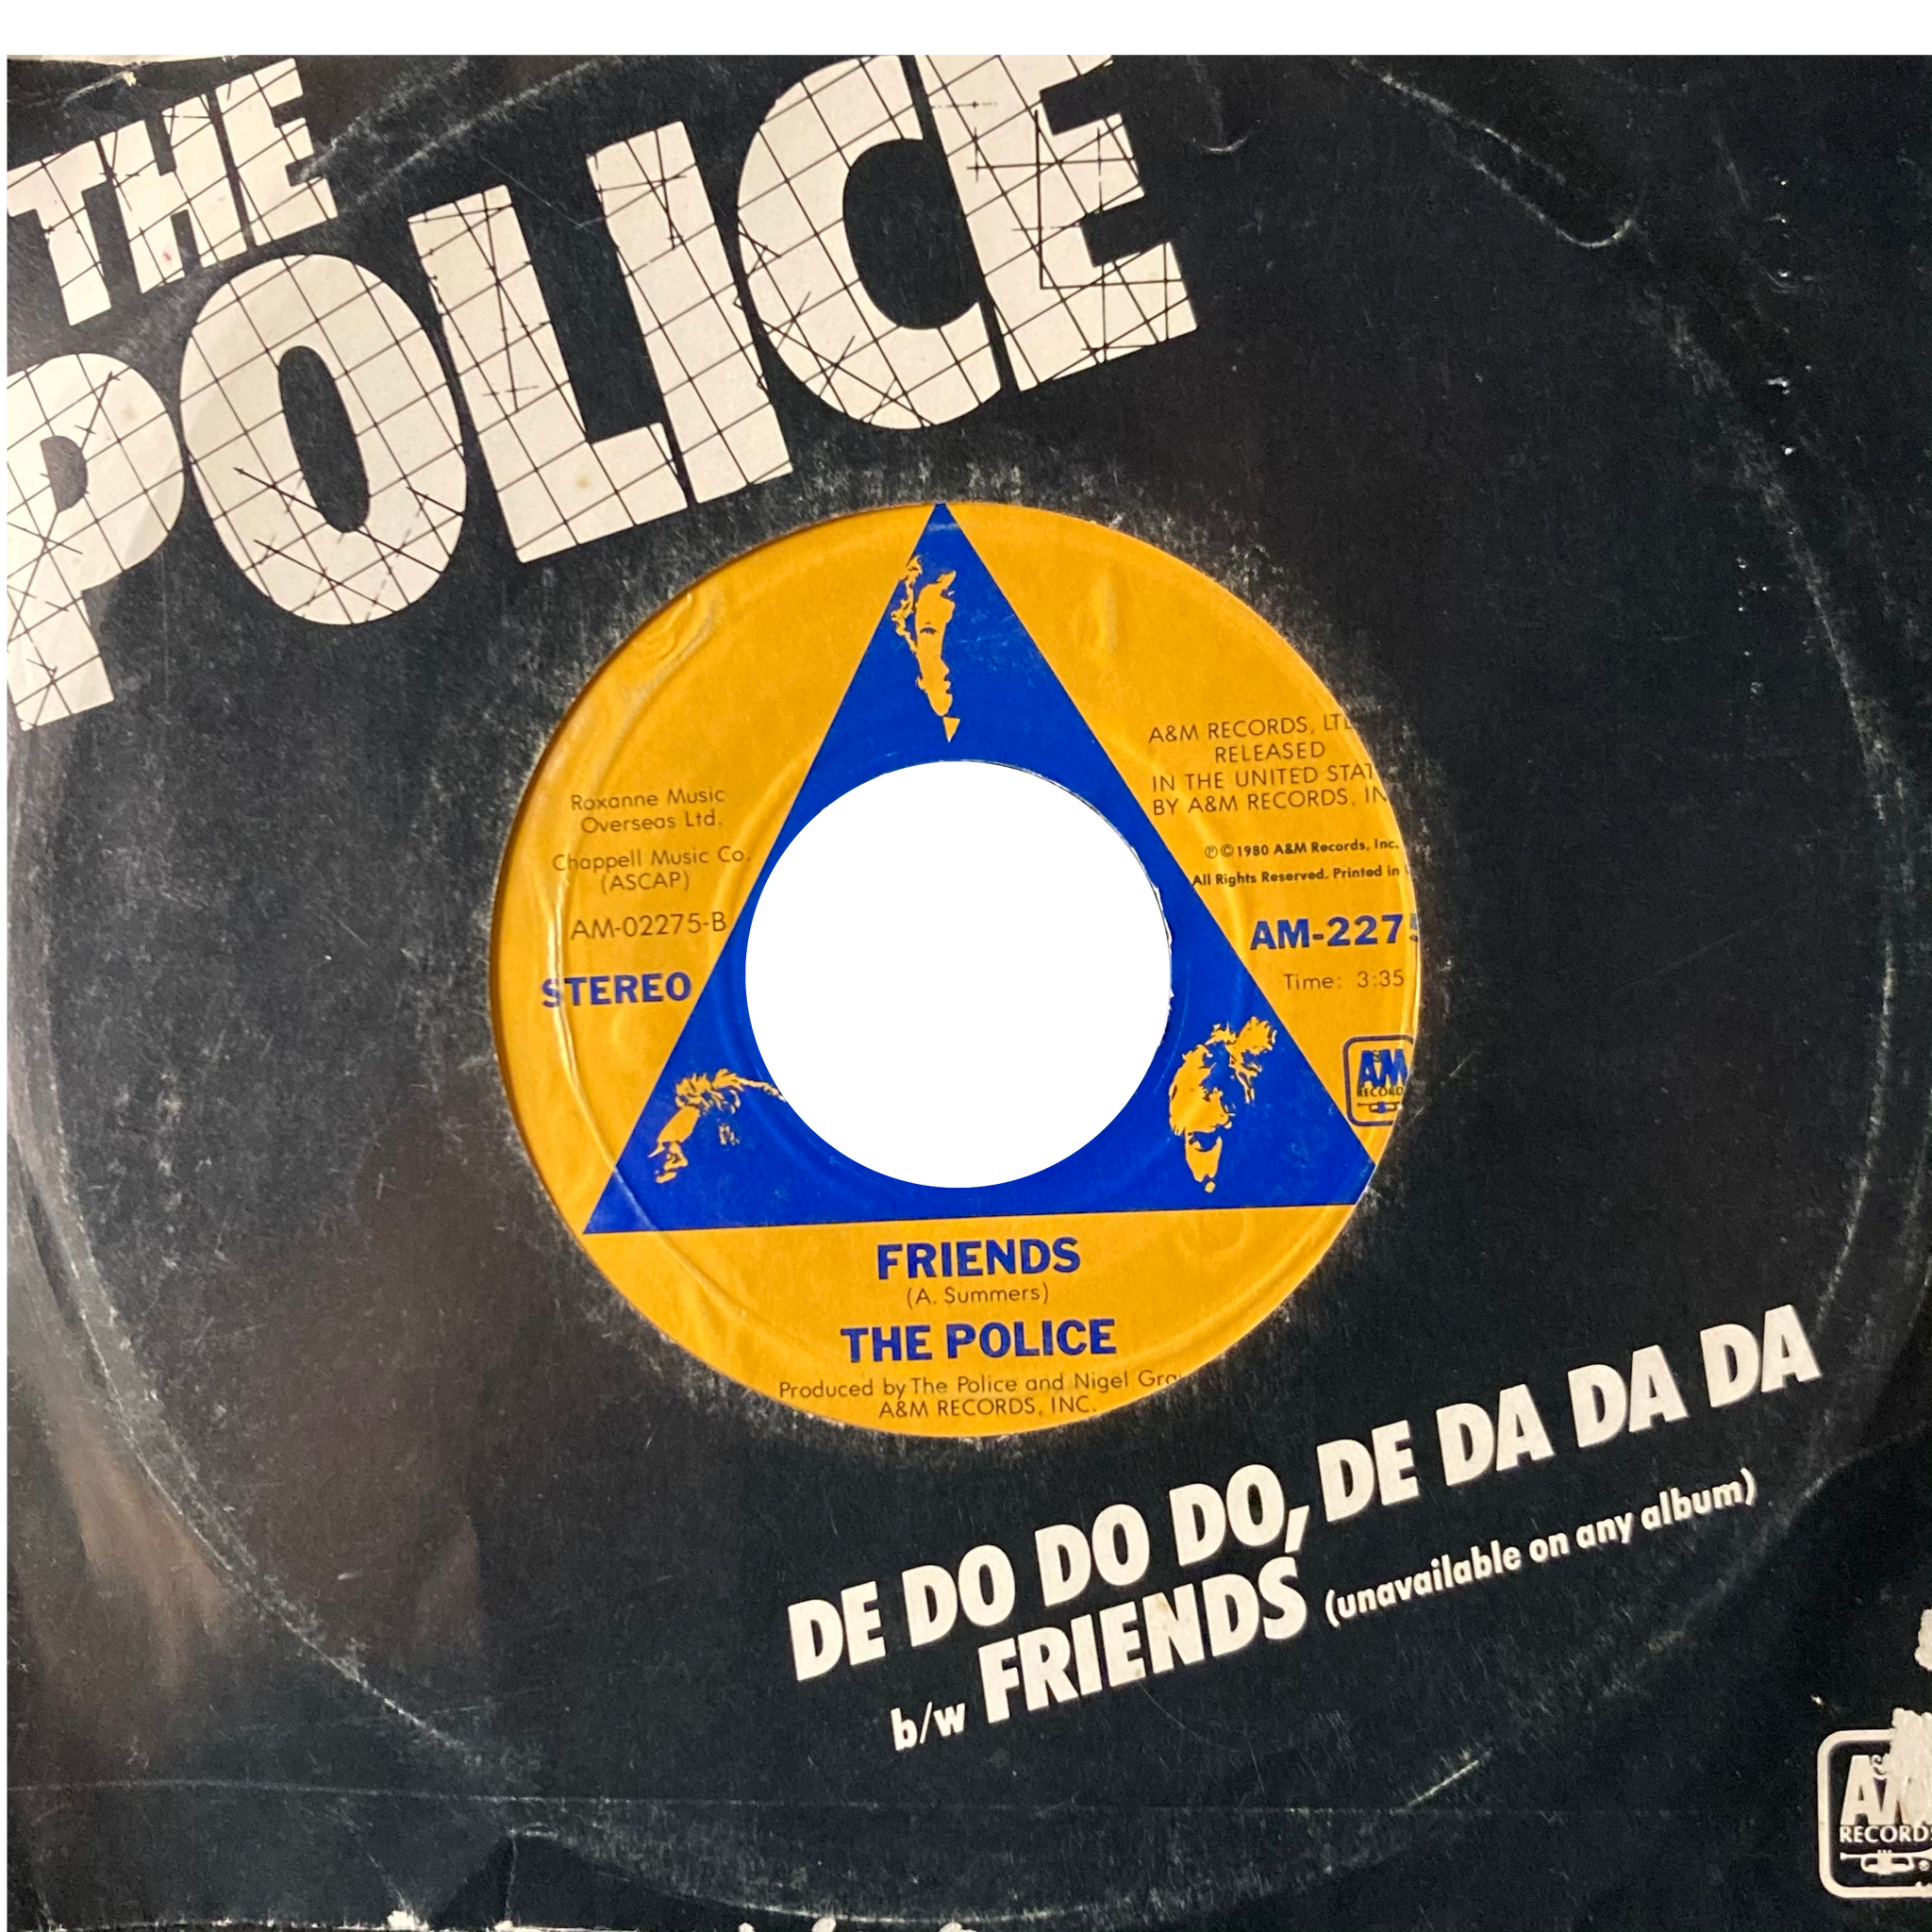 The Police - De Do Do Do, De Da Da Da / Friends [7"]